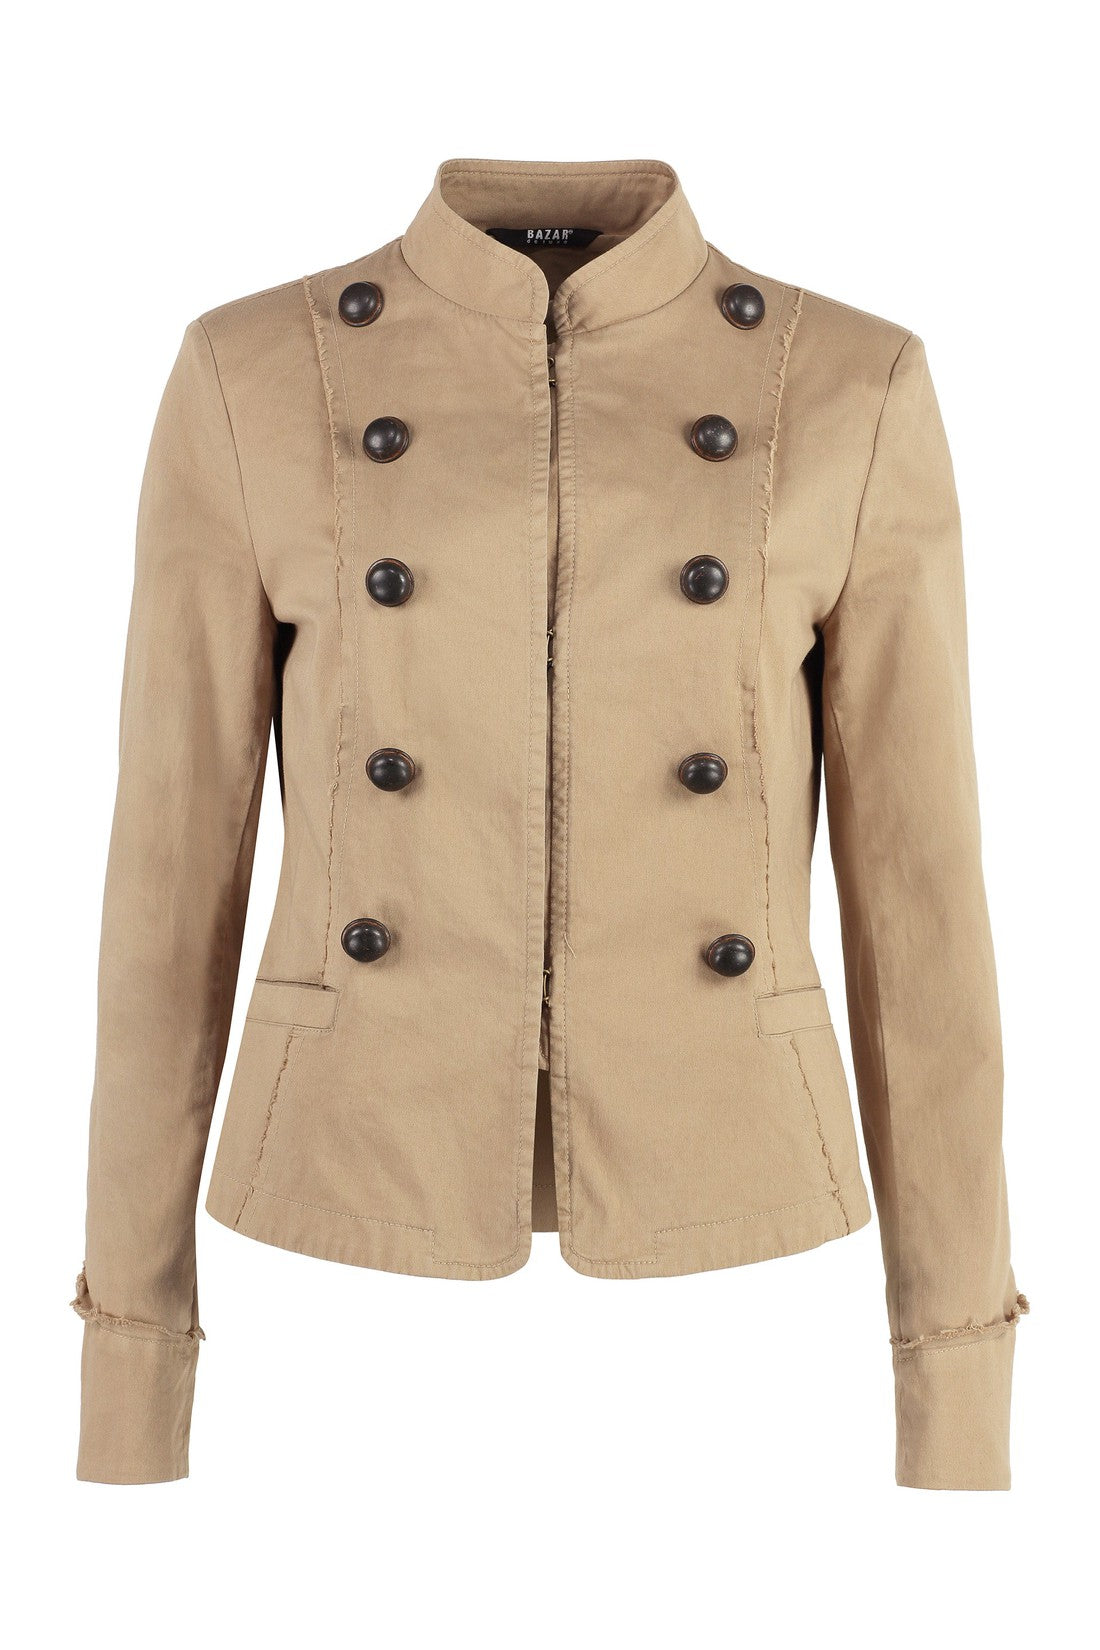 Piralo-OUTLET-SALE-Cotton jacket-ARCHIVIST